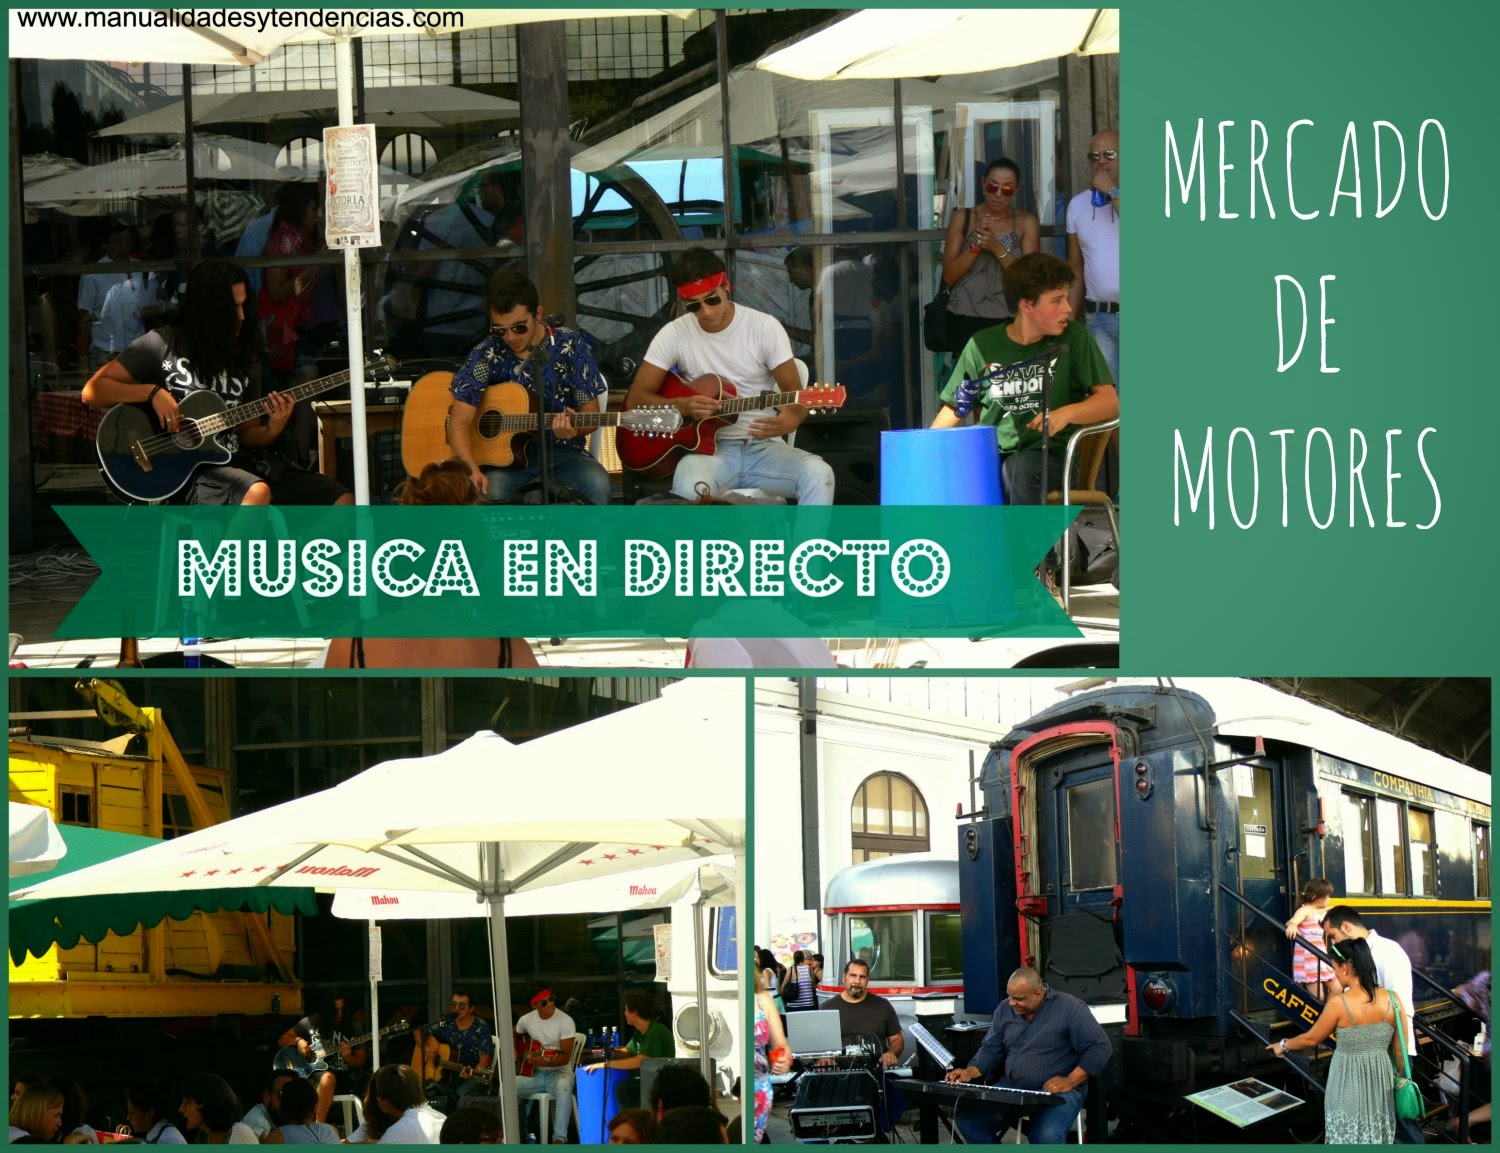 Música en vivo en el mercado de motores de Madrid